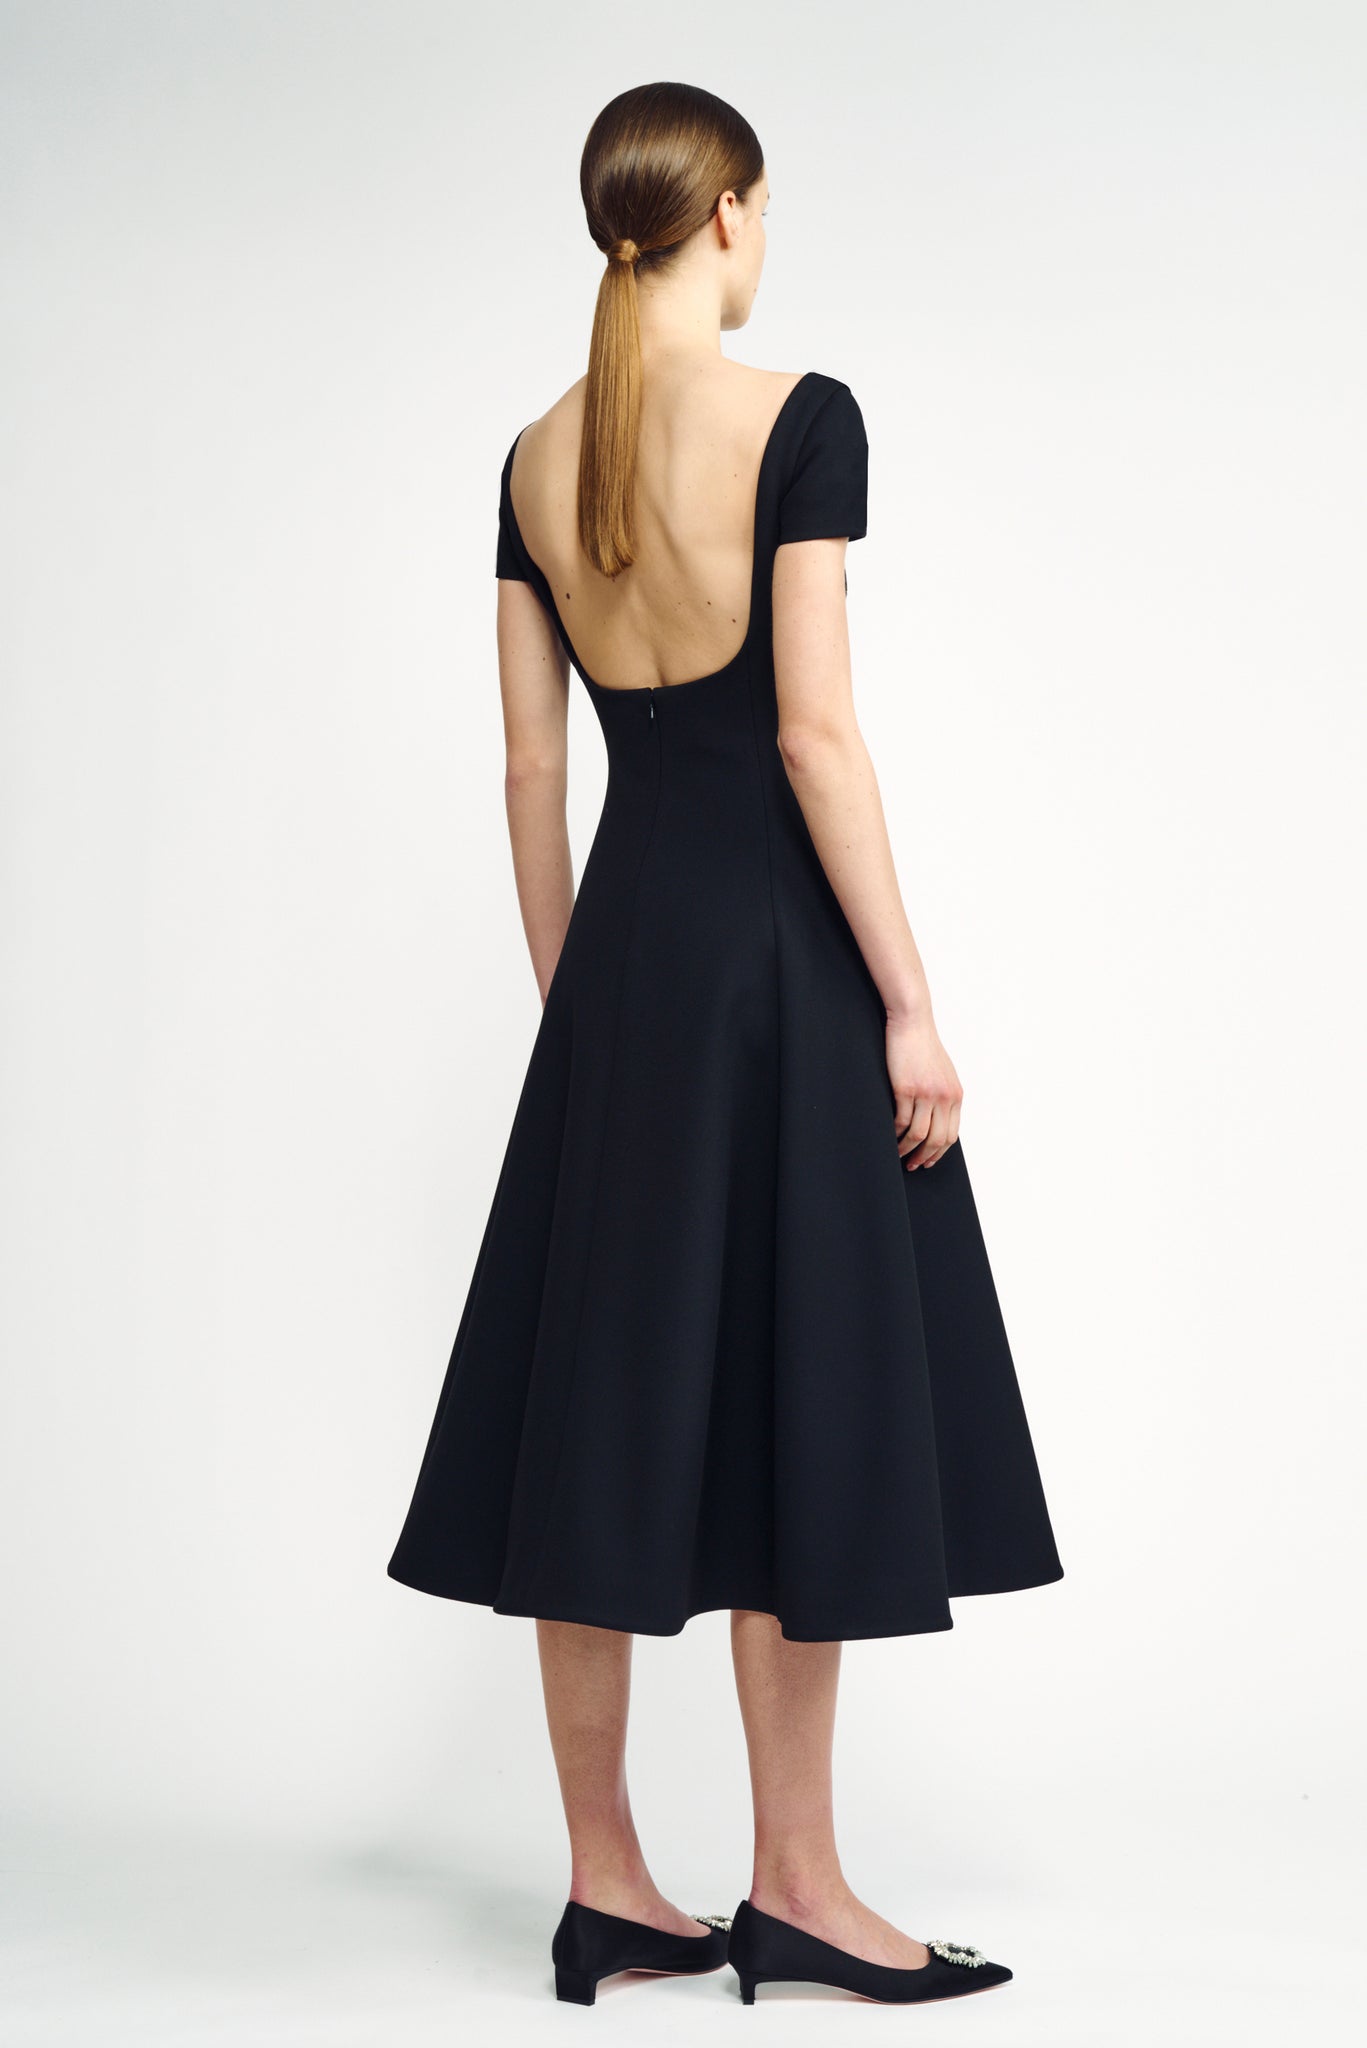 Marielle Dress | Black Cap Sleeve Scoop Back Dress | Emilia Wickstead